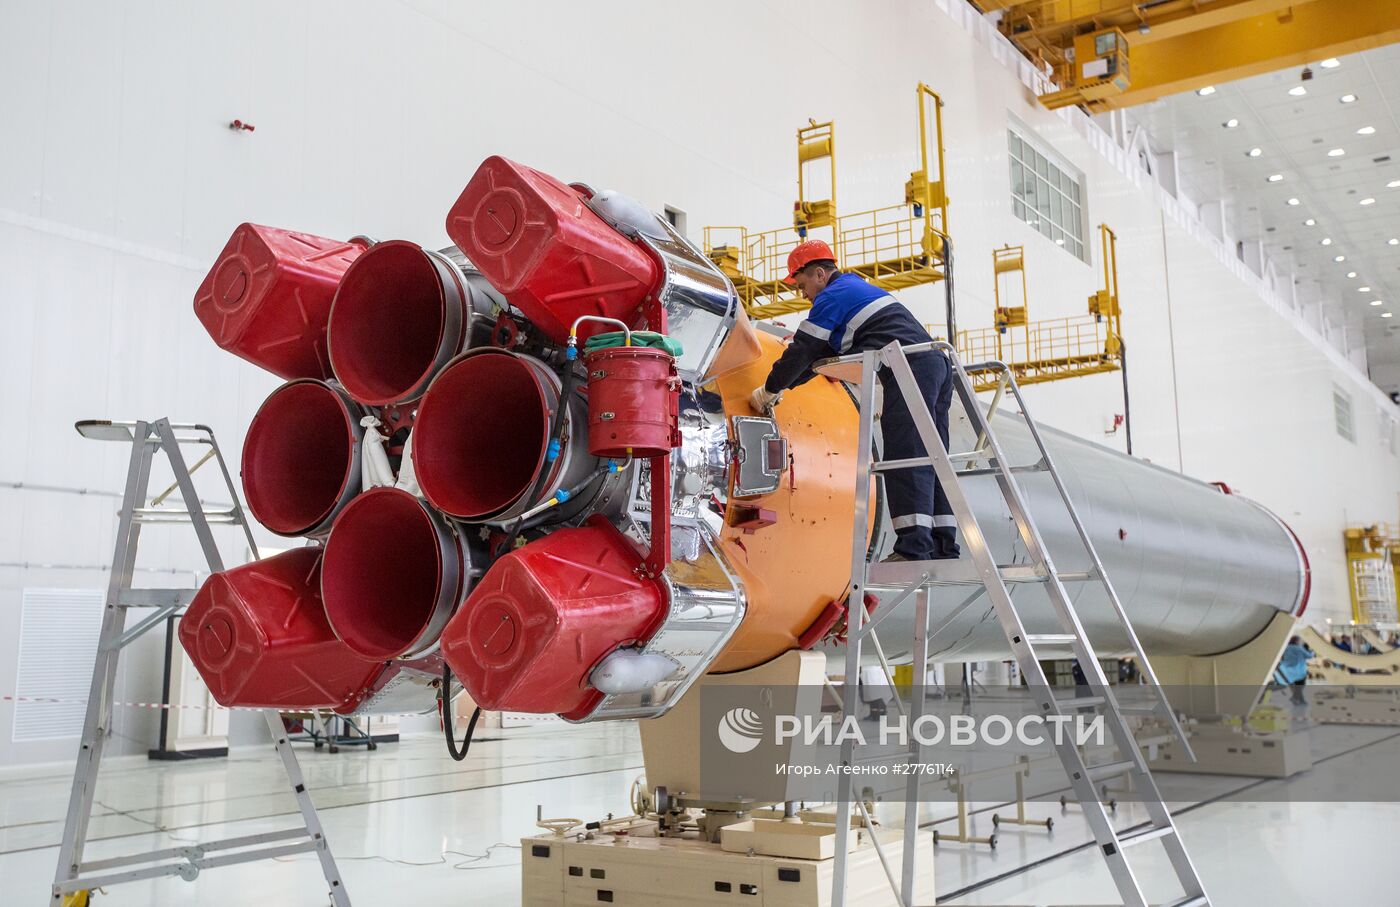 Начало сборки ракеты-носителя "Союз" для первого пуска с космодрома "Восточный"